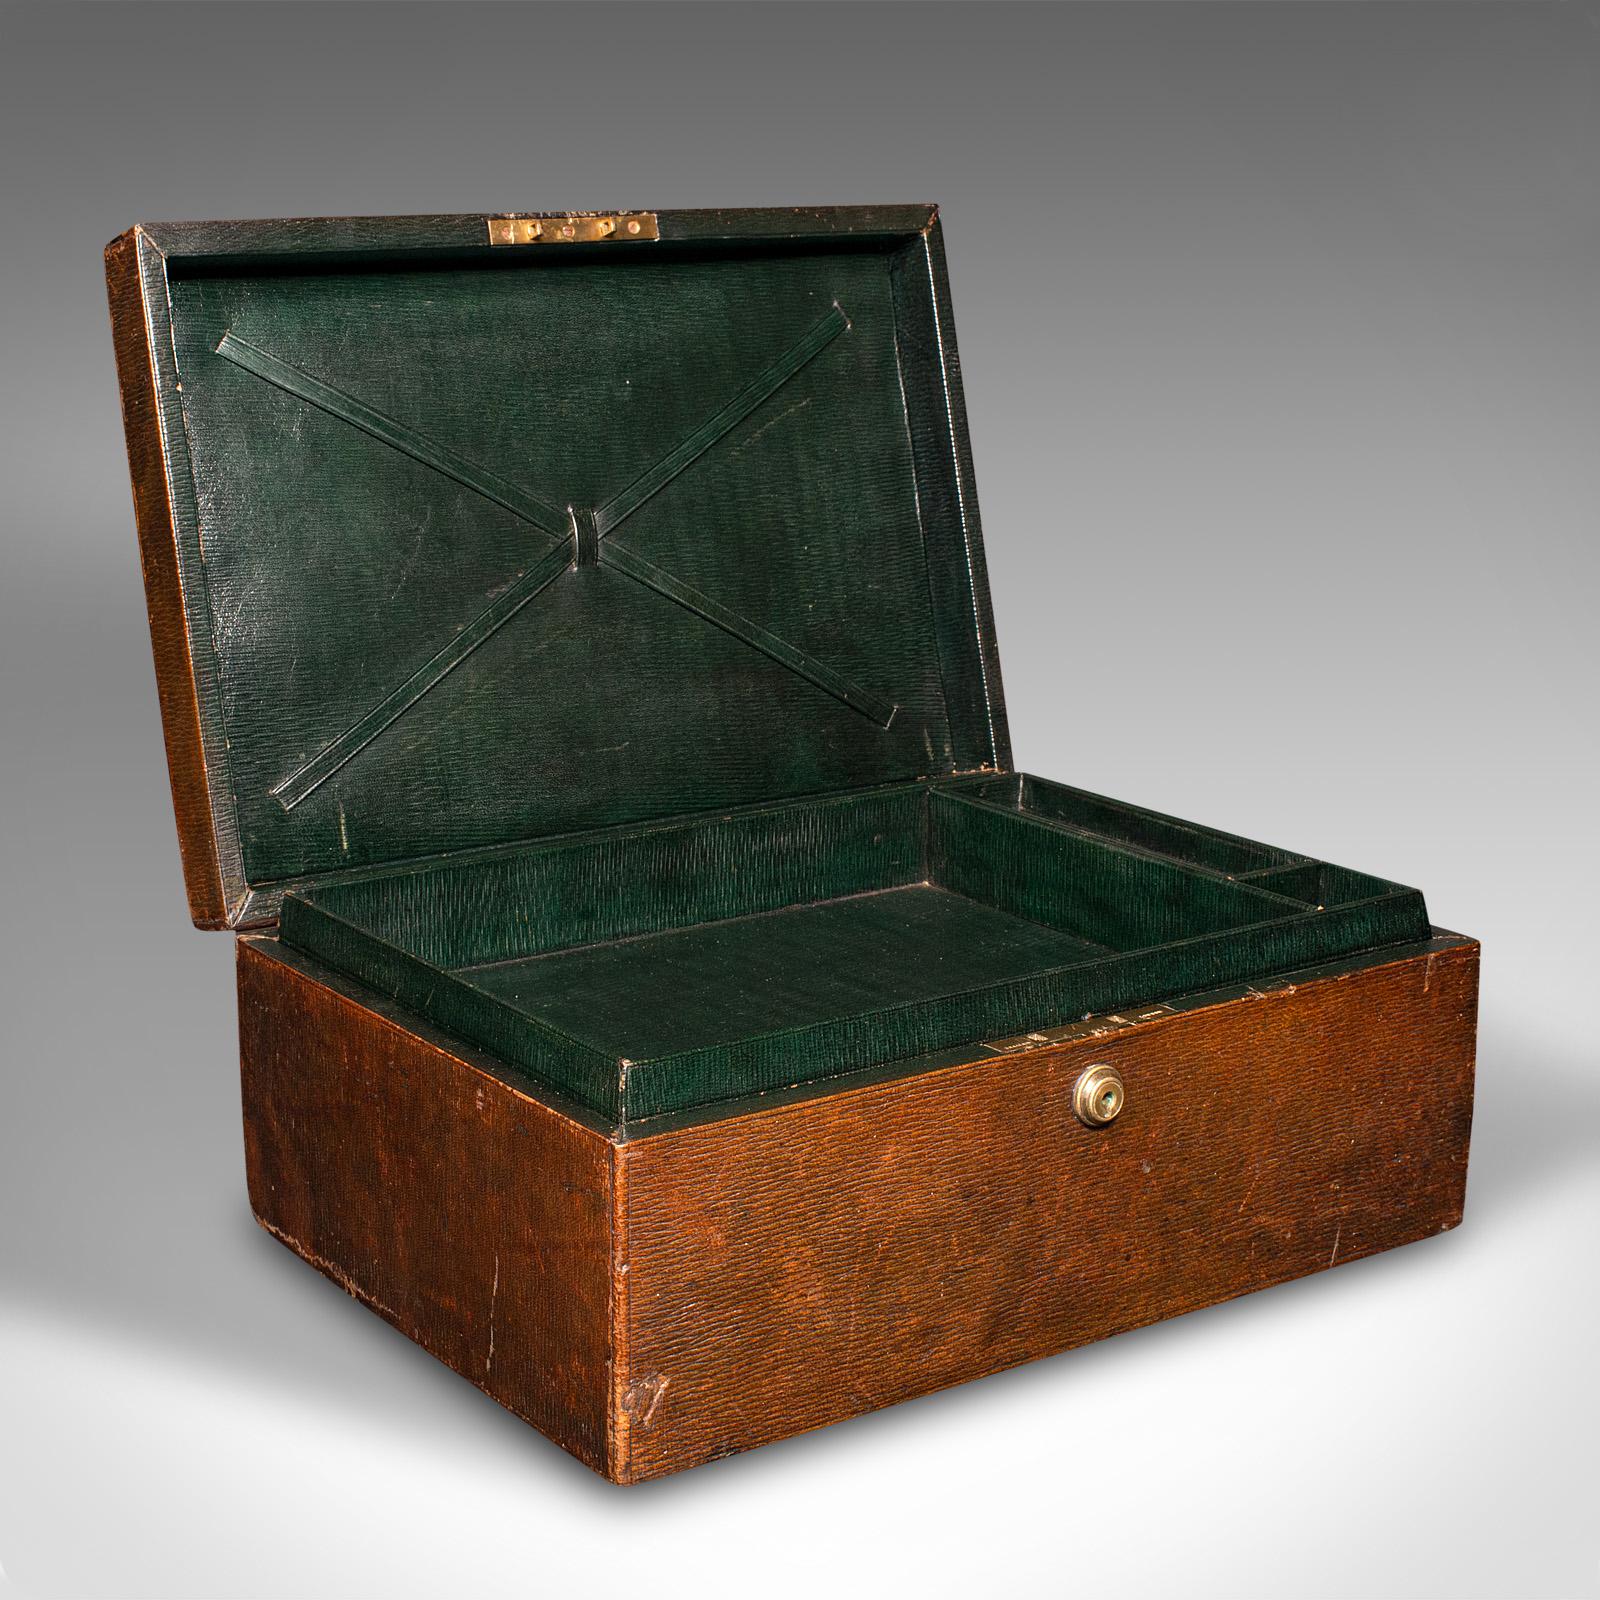 Il s'agit d'une boîte de correspondance ancienne. Un écritoire de voyage anglais en cuir vieilli à la manière d'Asprey, datant du milieu de la période victorienne, vers 1860.

Séduisant écritoire en cuir de l'époque victorienne, aux couleurs